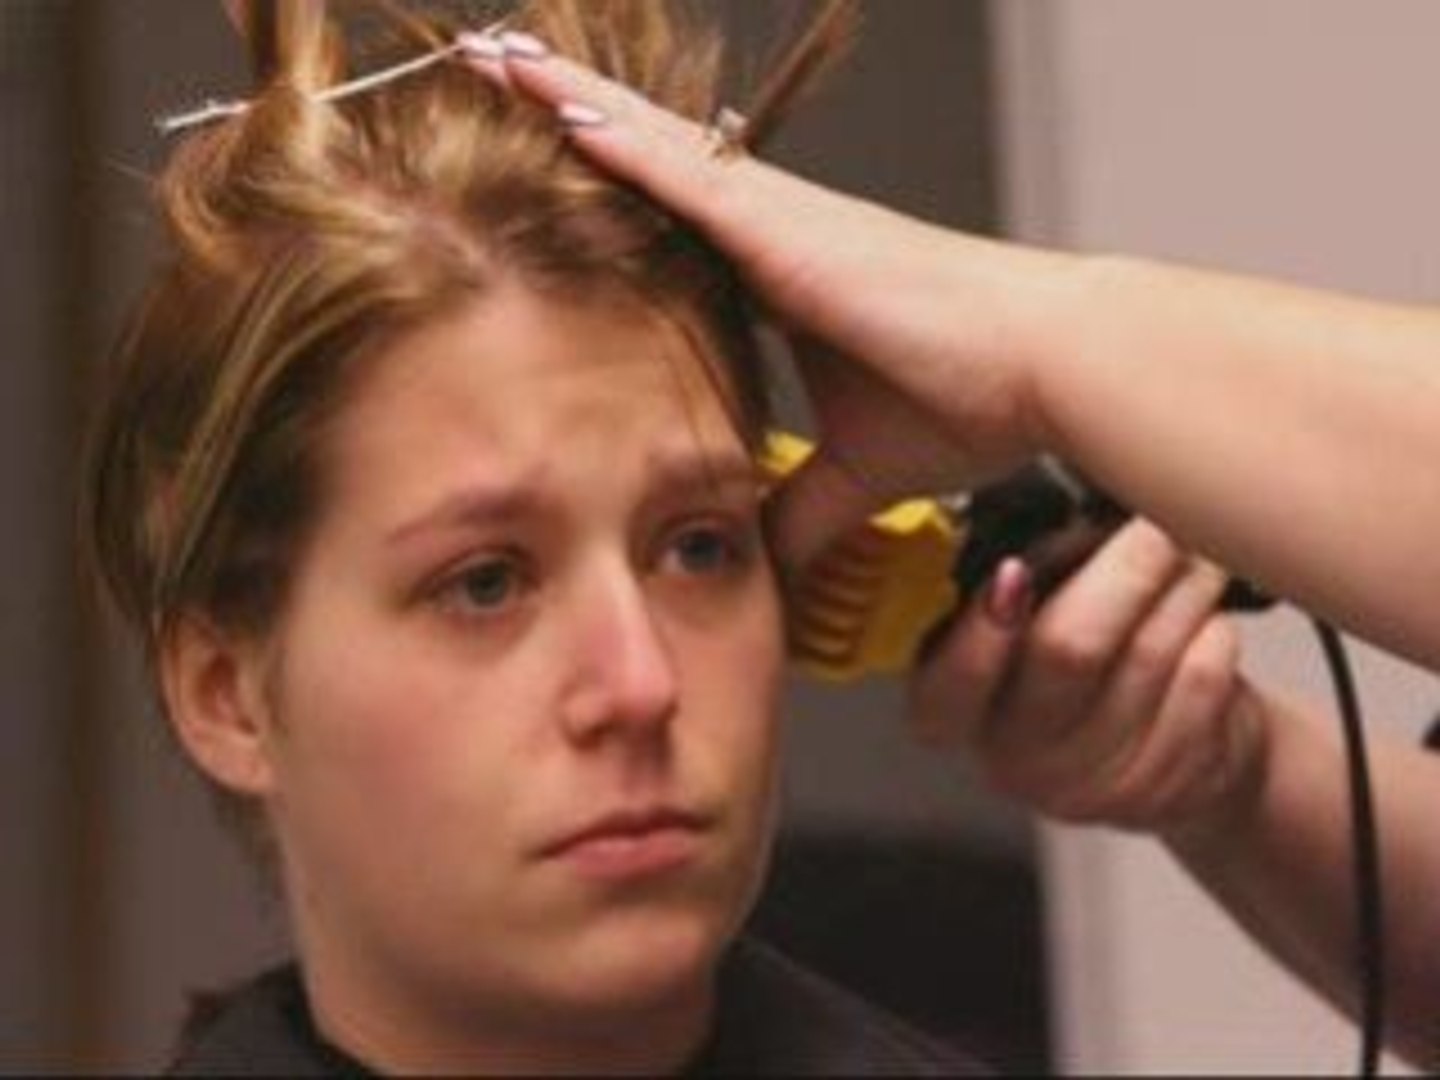 Female Prison Boot Camp Haircut - Haircuts Models Ideas